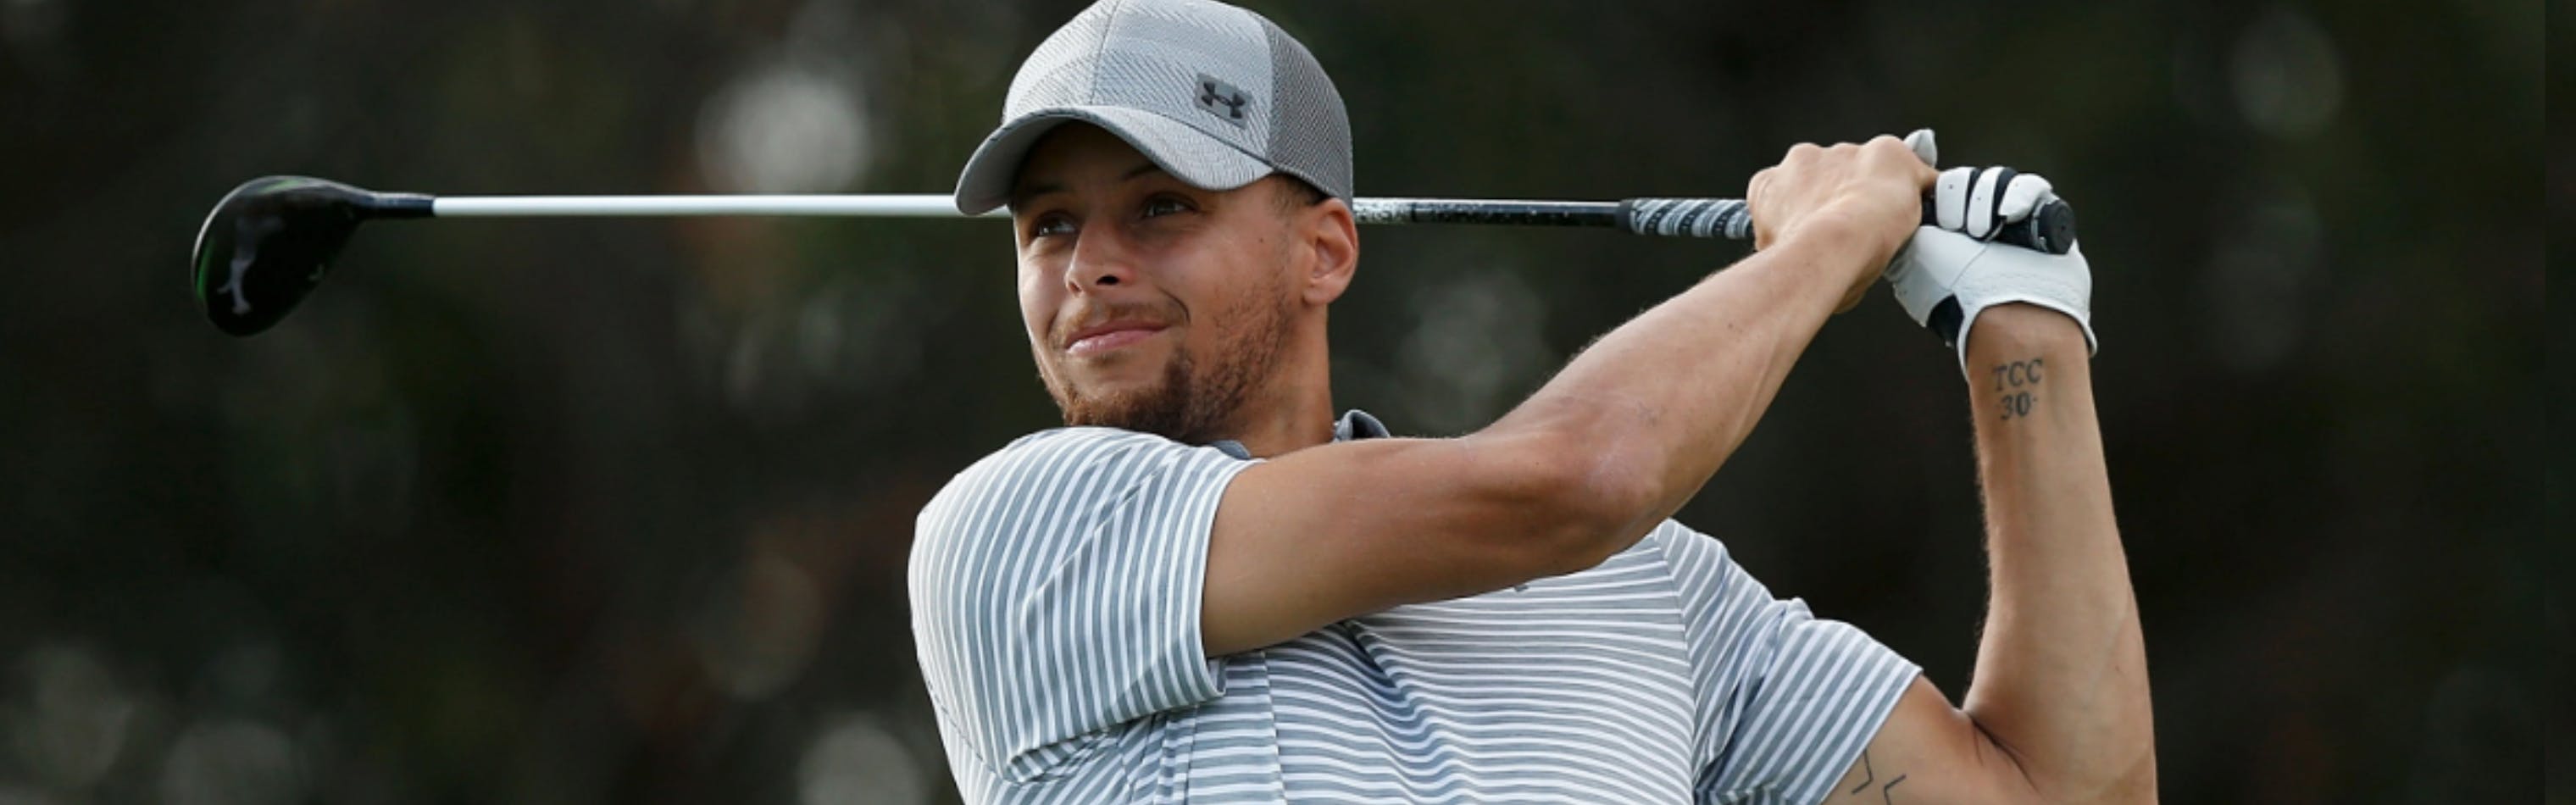 Golfer in a striped shirt swinging a golf club